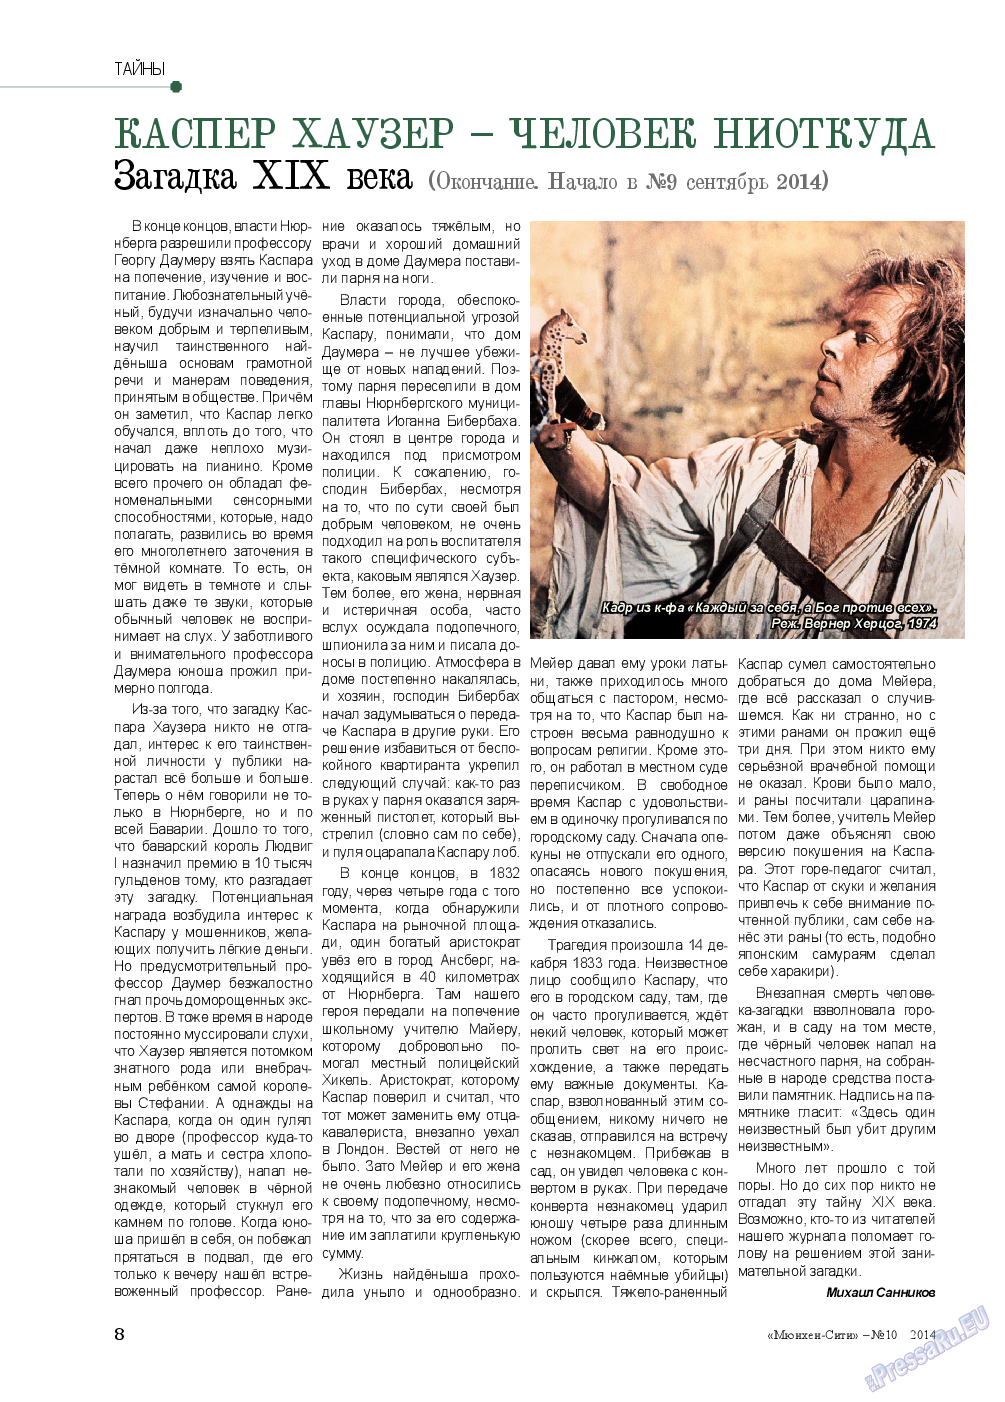 Мюнхен-сити (журнал). 2014 год, номер 10, стр. 8